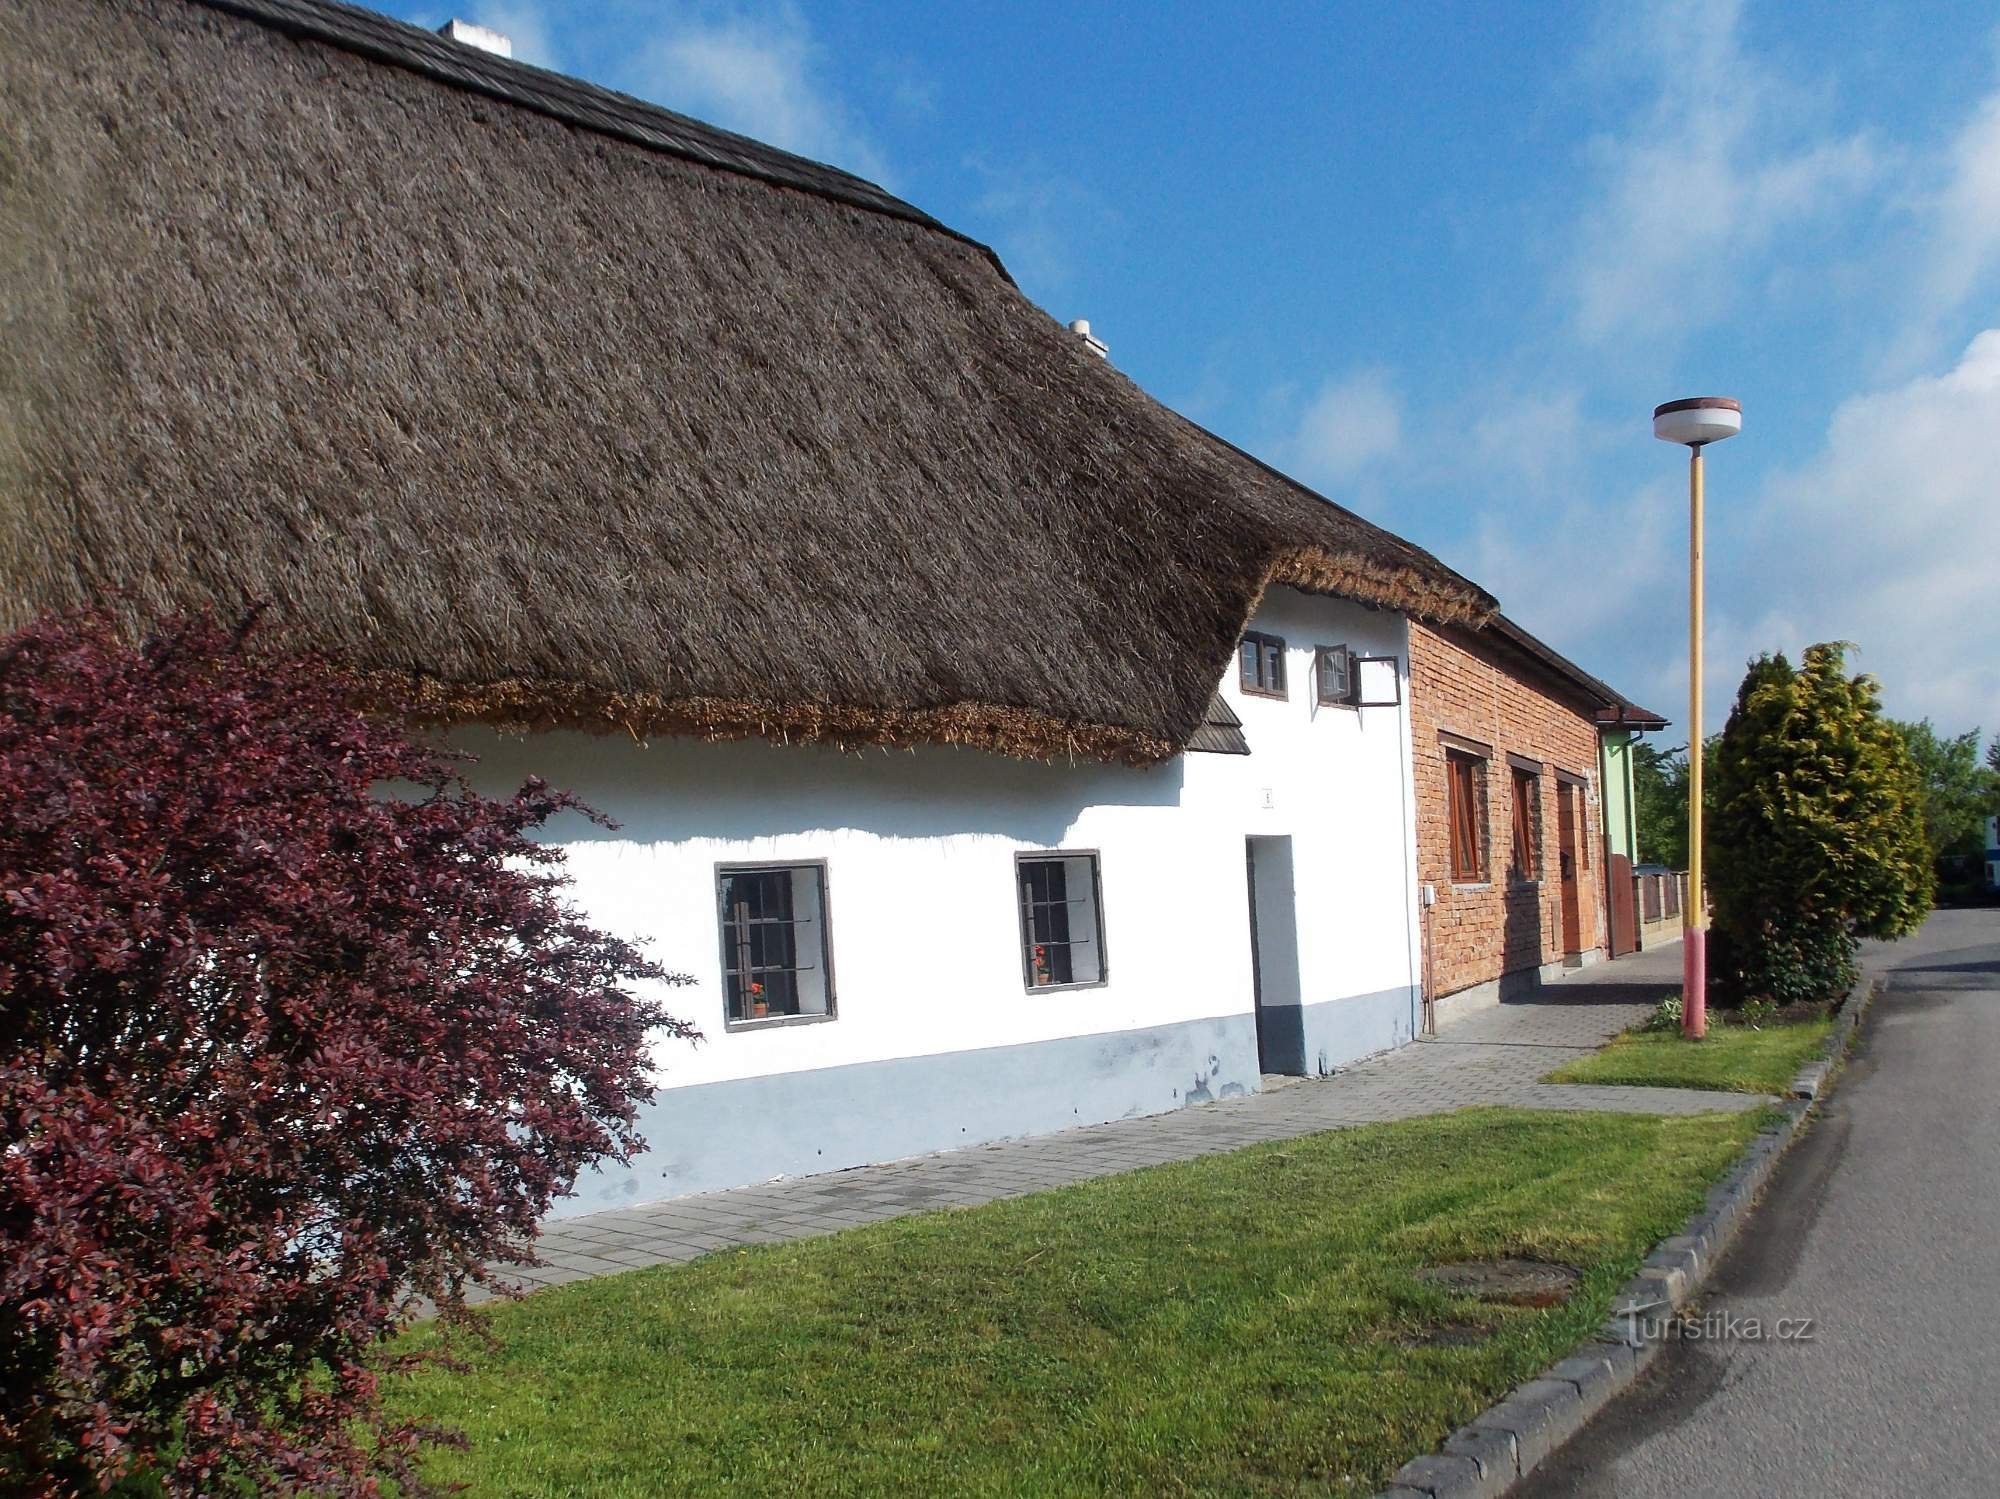 Viagem ao museu ao ar livre e moinho de vento em Rymice perto de Zlín